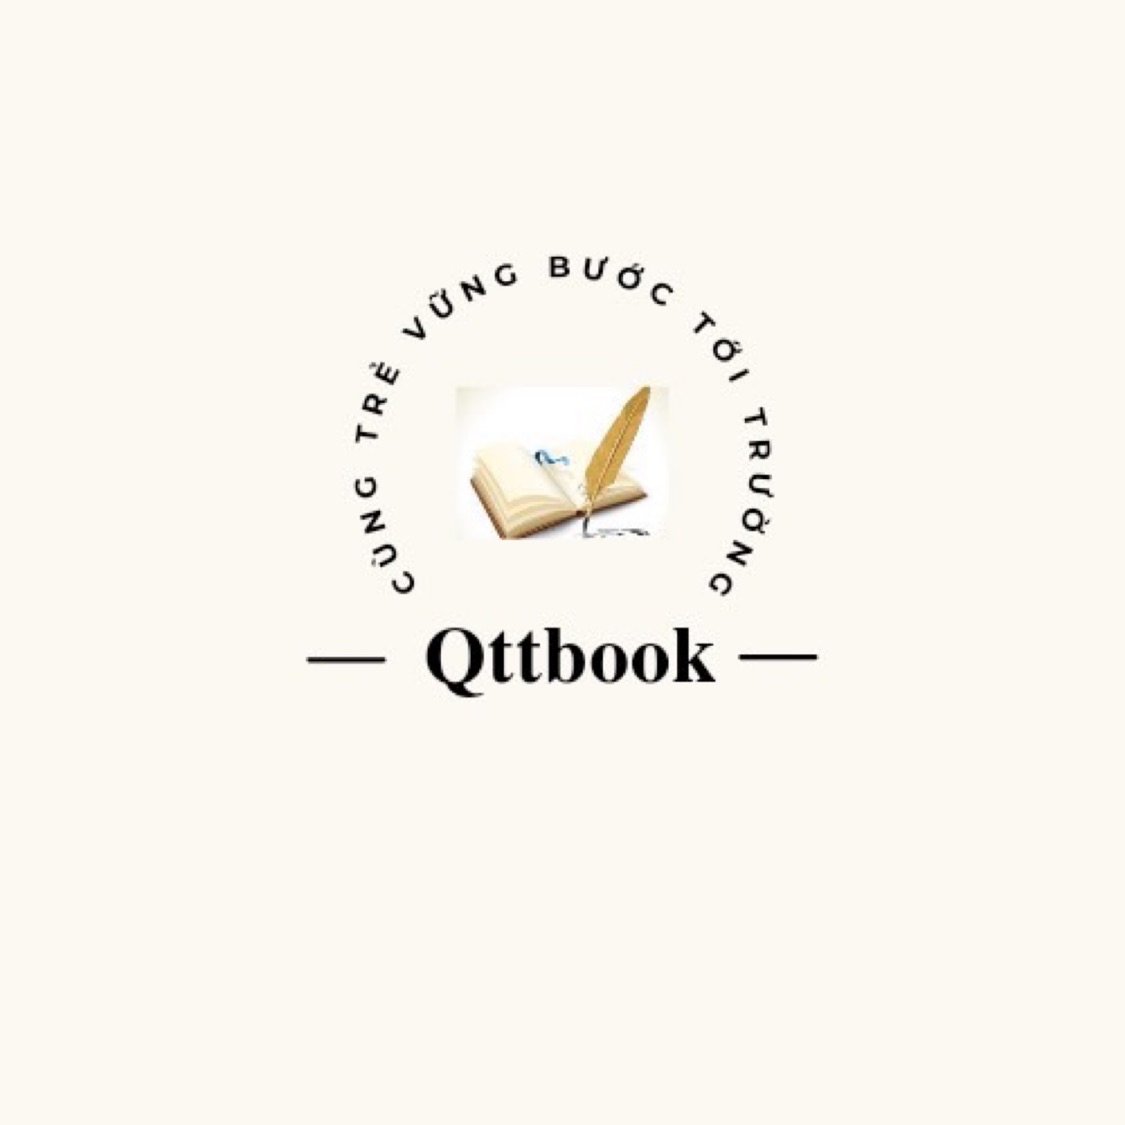 Qttbook